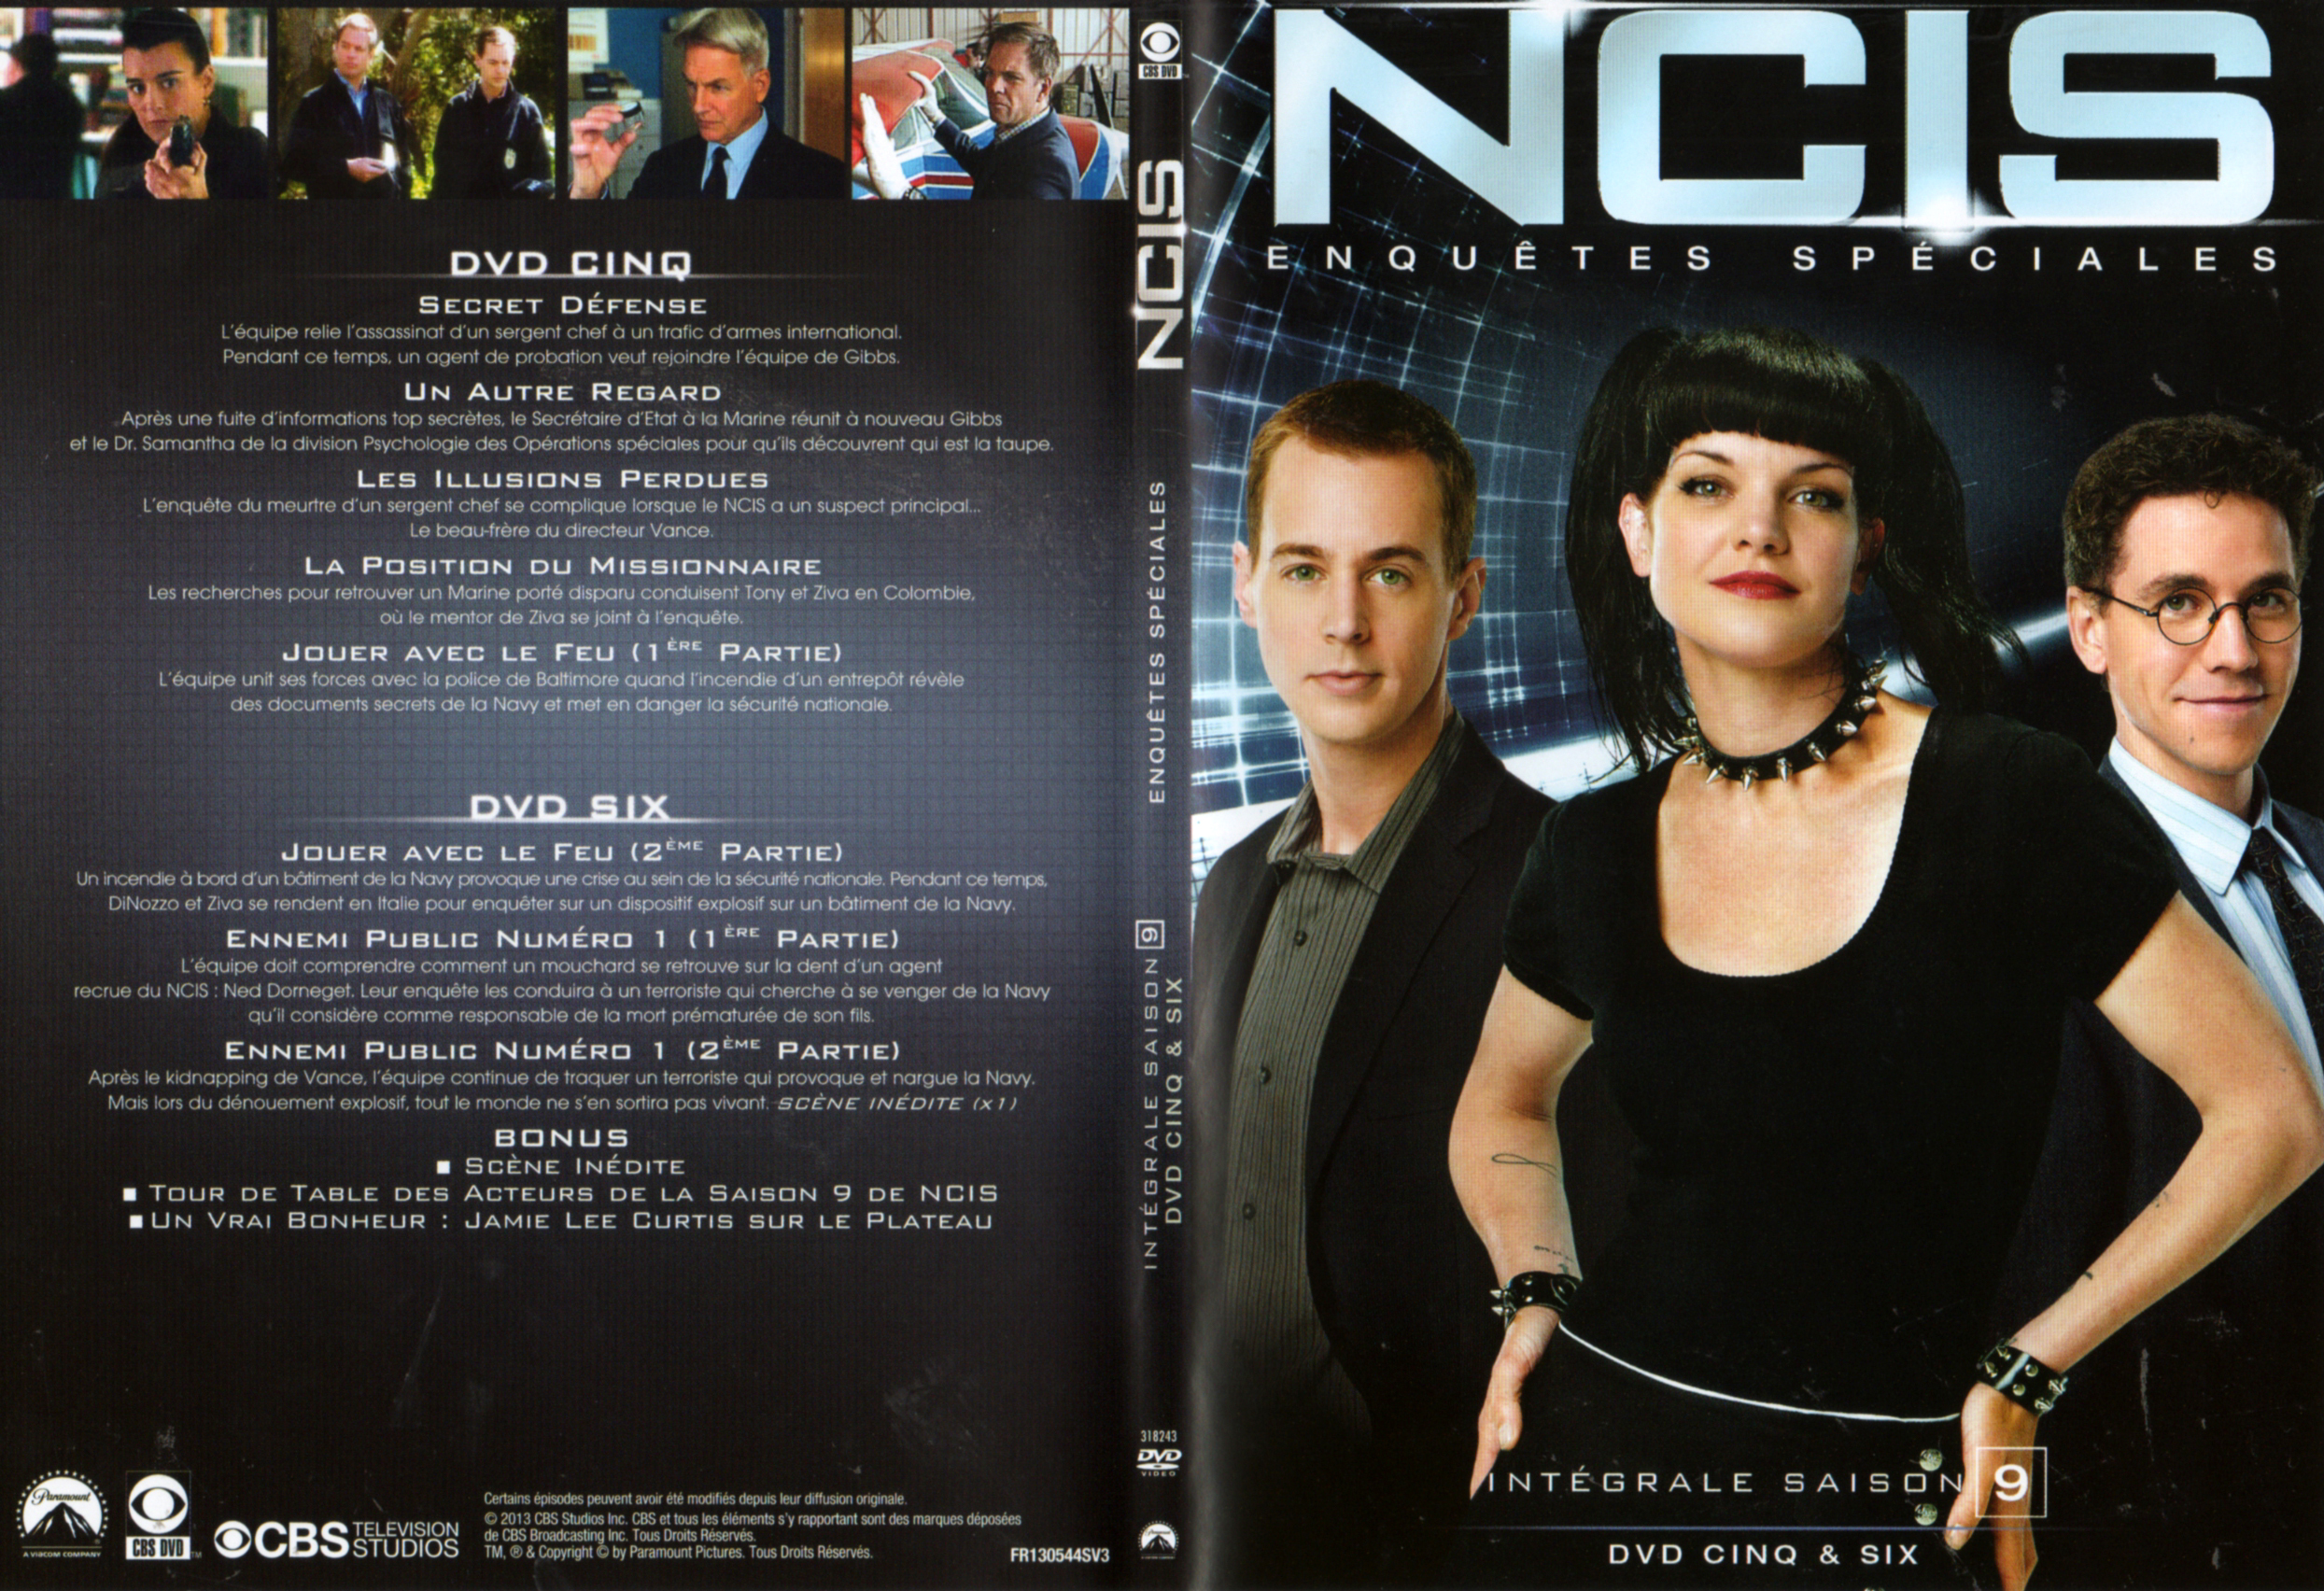 Jaquette DVD NCIS Saison 9 DVD 3